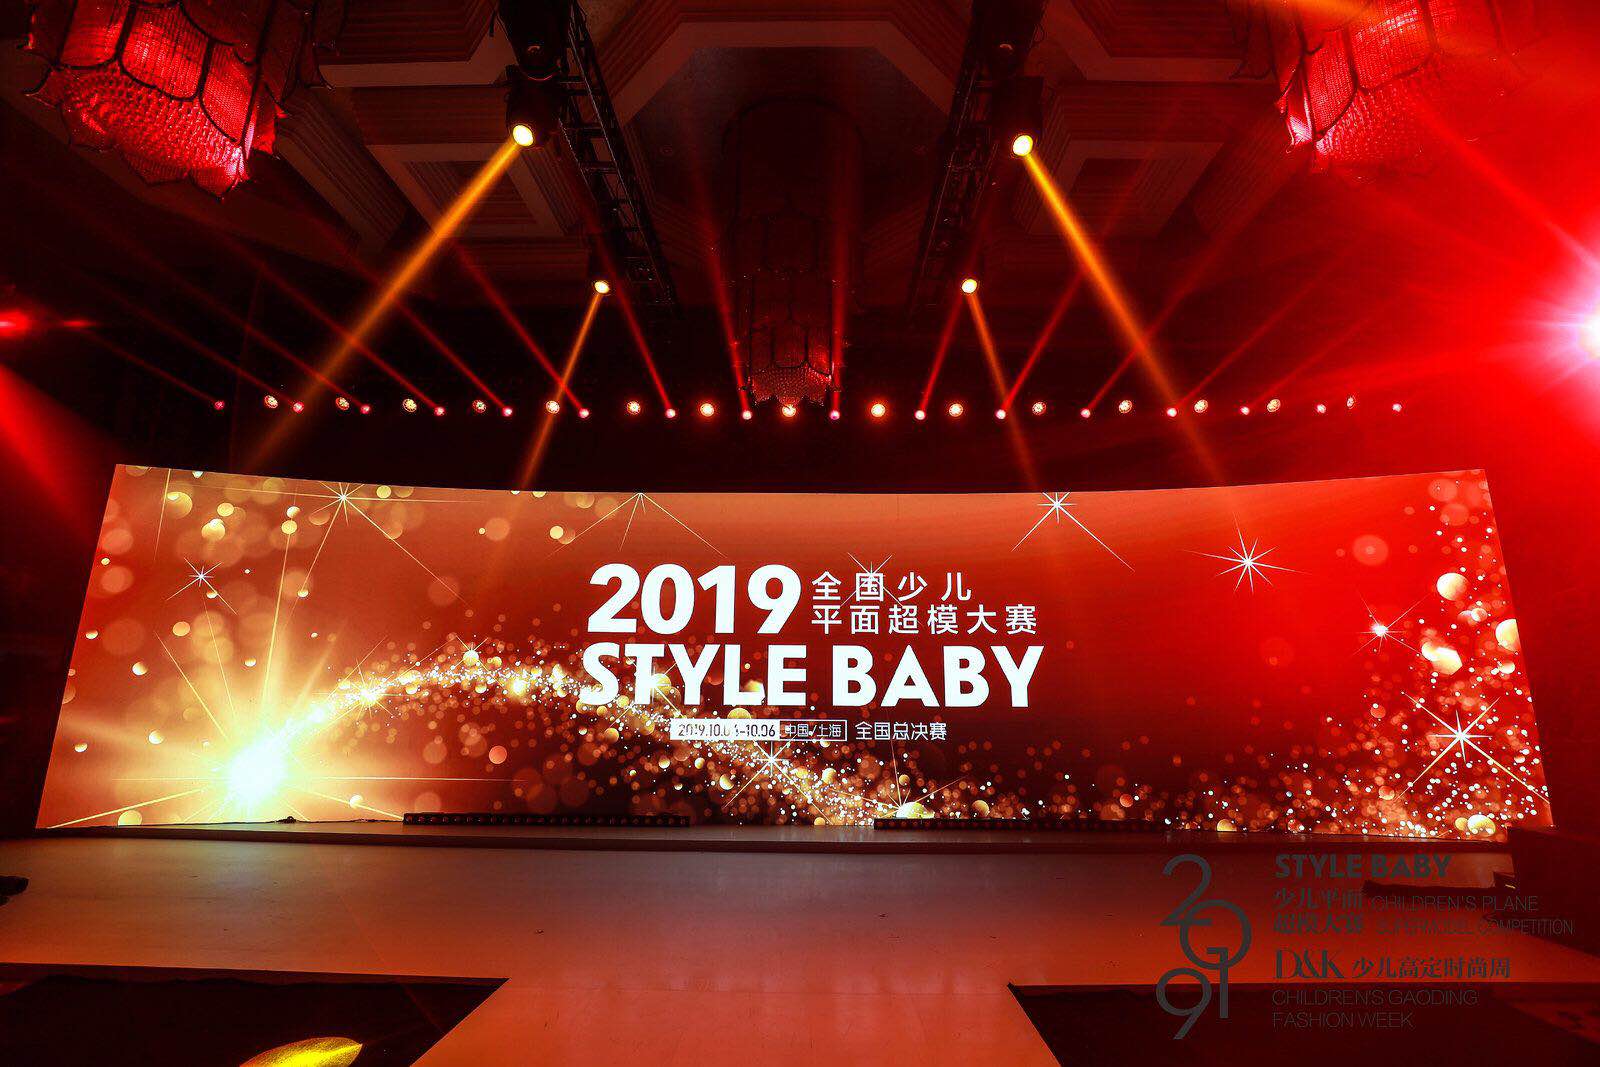 翎秀 × 2019 Style Baby全国少儿平面超模大赛全国总决赛，满载荣誉，华丽归来！